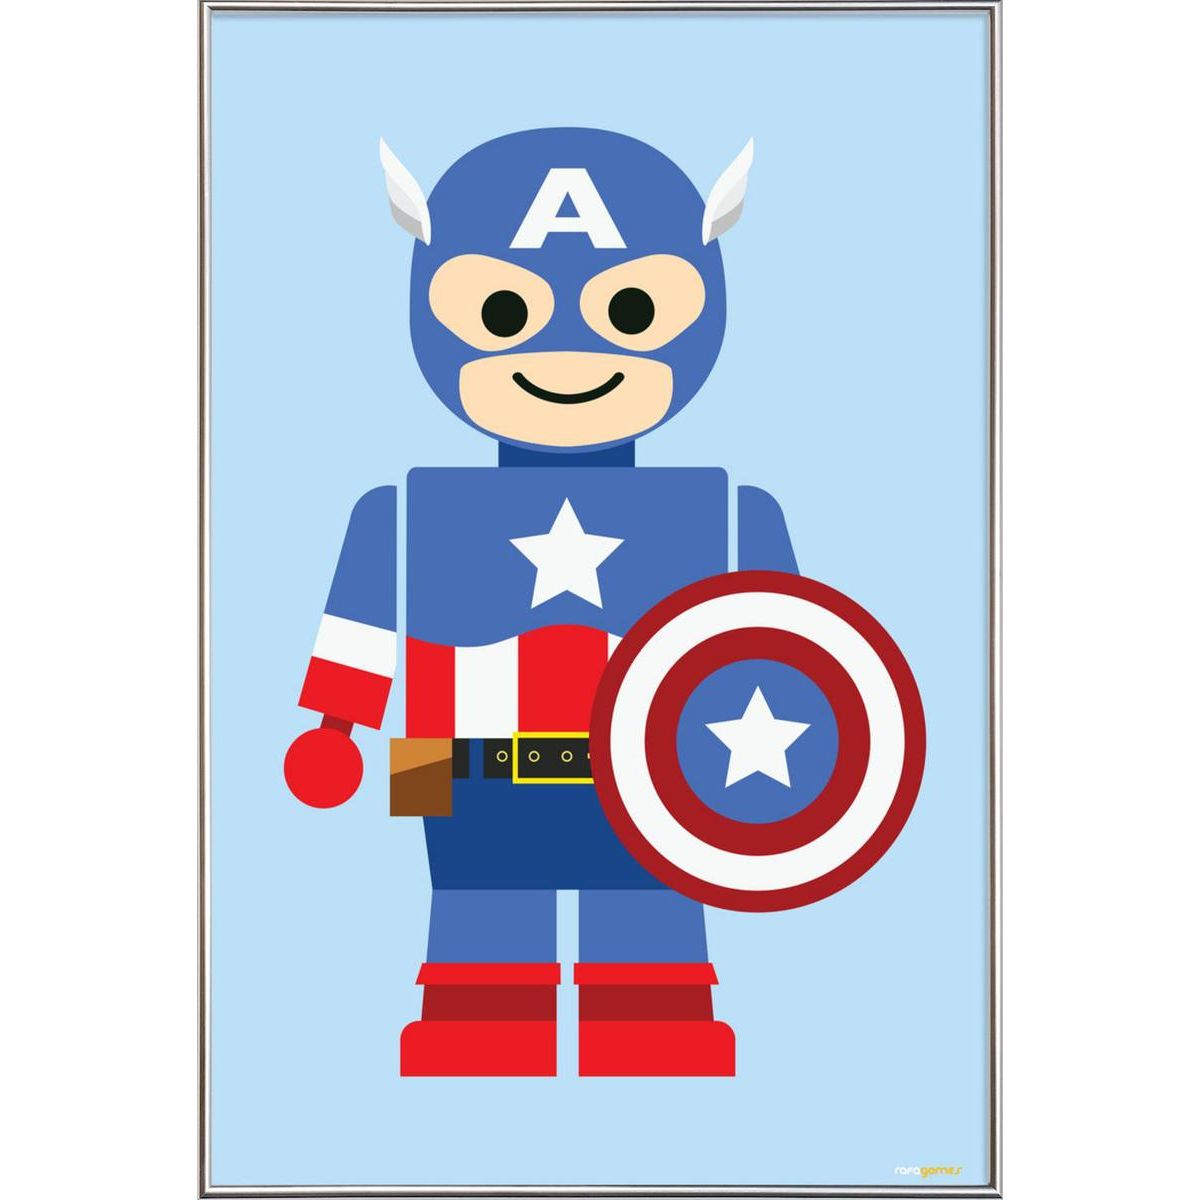 Déguisement - Bouclier en plastique metallisé - Captain America - 30 cm